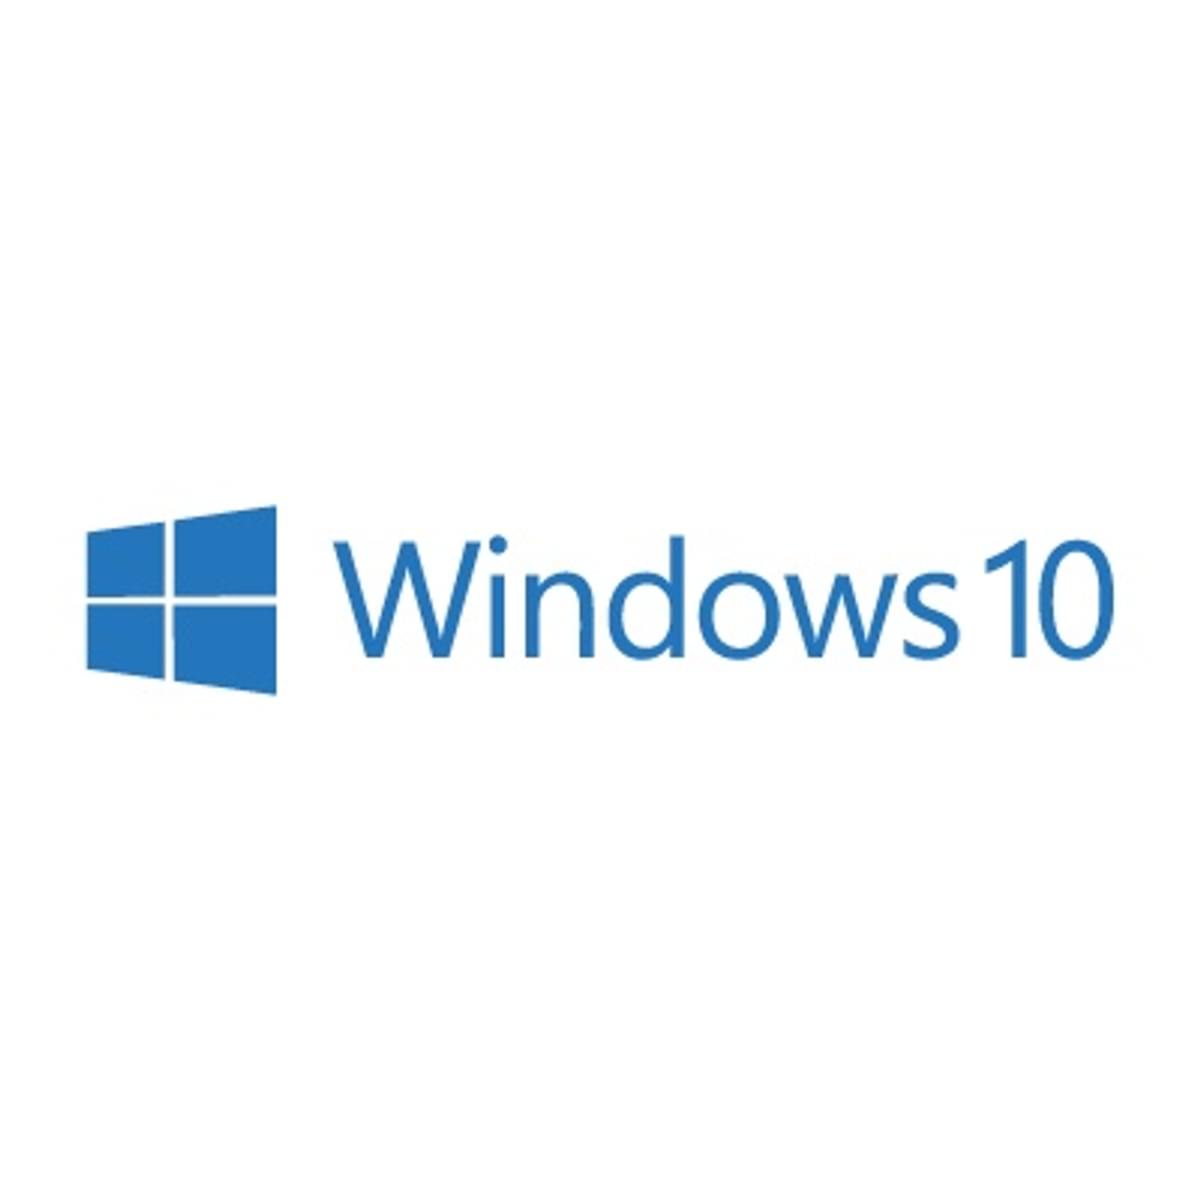 Windows 10 gaat automatisch op slot image